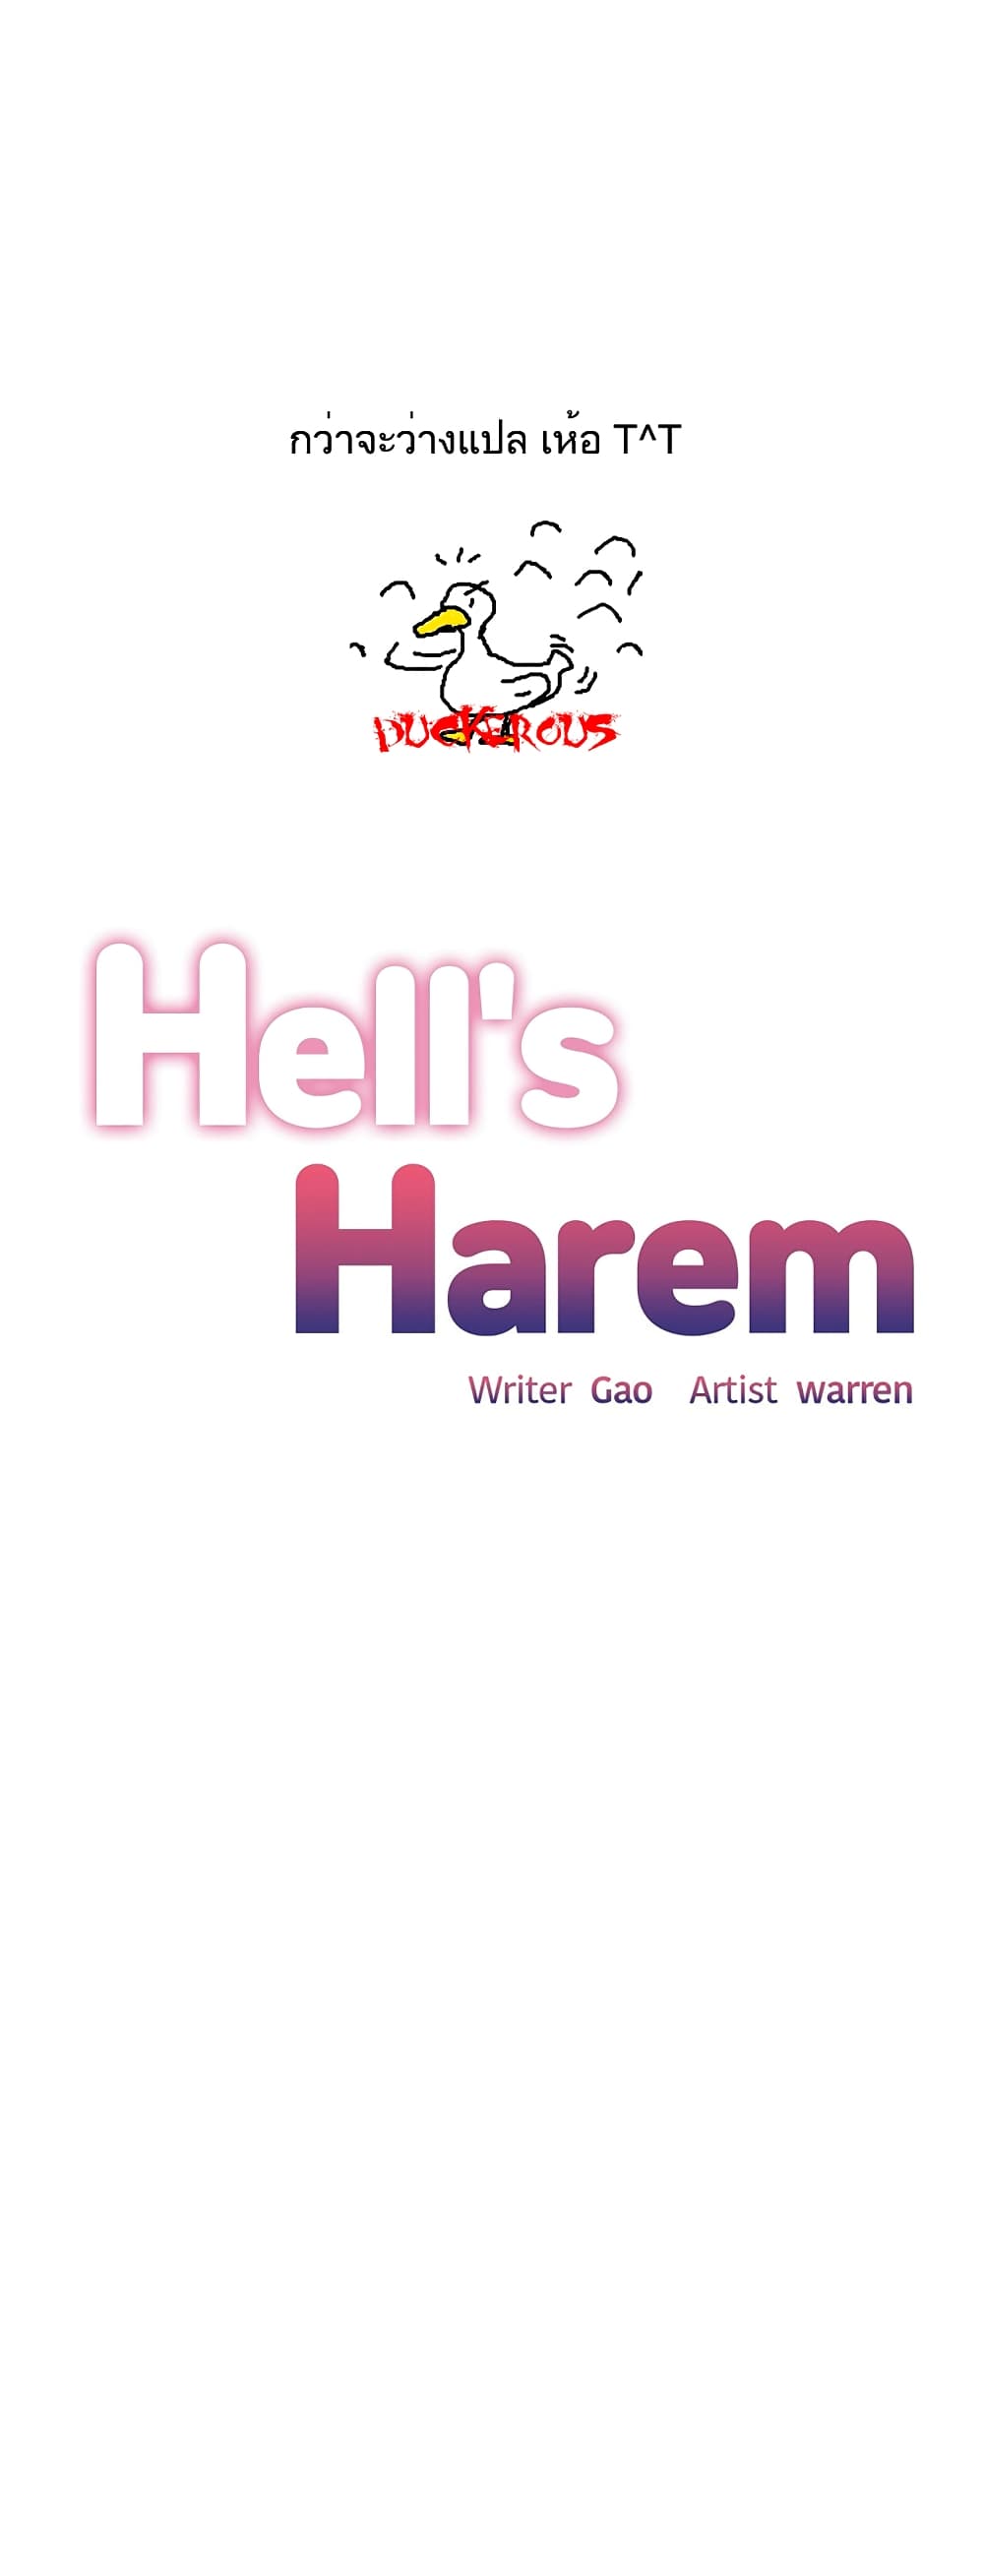 Hell's Harem 42 (1)